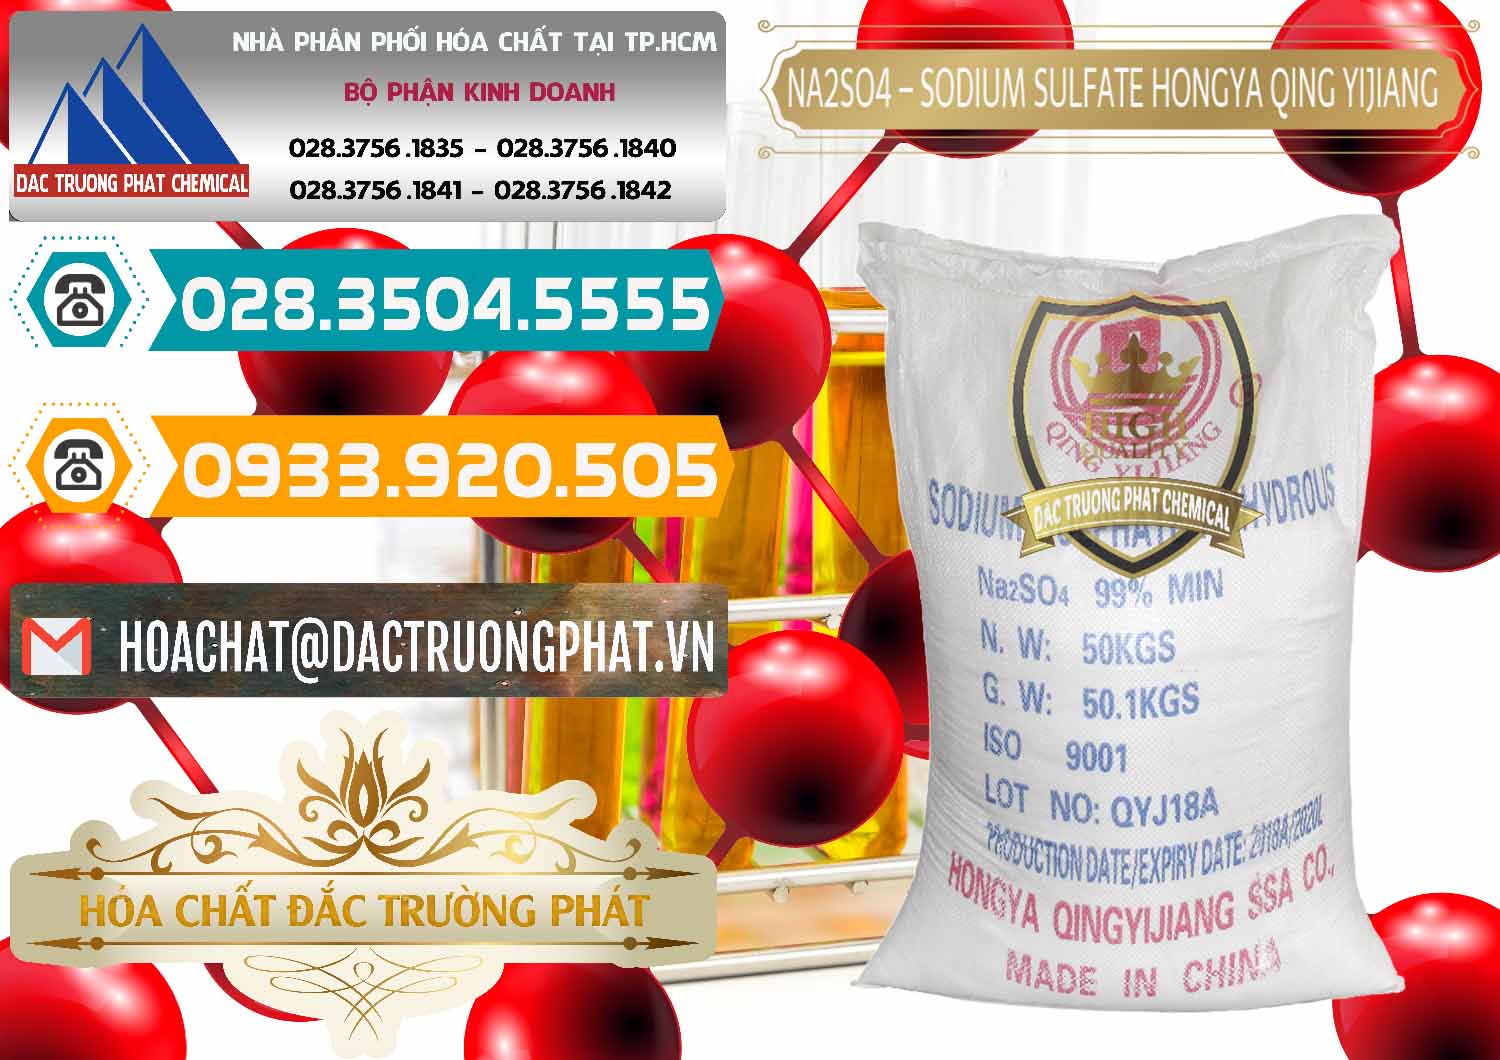 Cty chuyên cung cấp _ bán Sodium Sulphate - Muối Sunfat Na2SO4 Logo Cánh Bườm Hongya Qing Yi Trung Quốc China - 0098 - Nơi chuyên cung cấp _ nhập khẩu hóa chất tại TP.HCM - congtyhoachat.vn